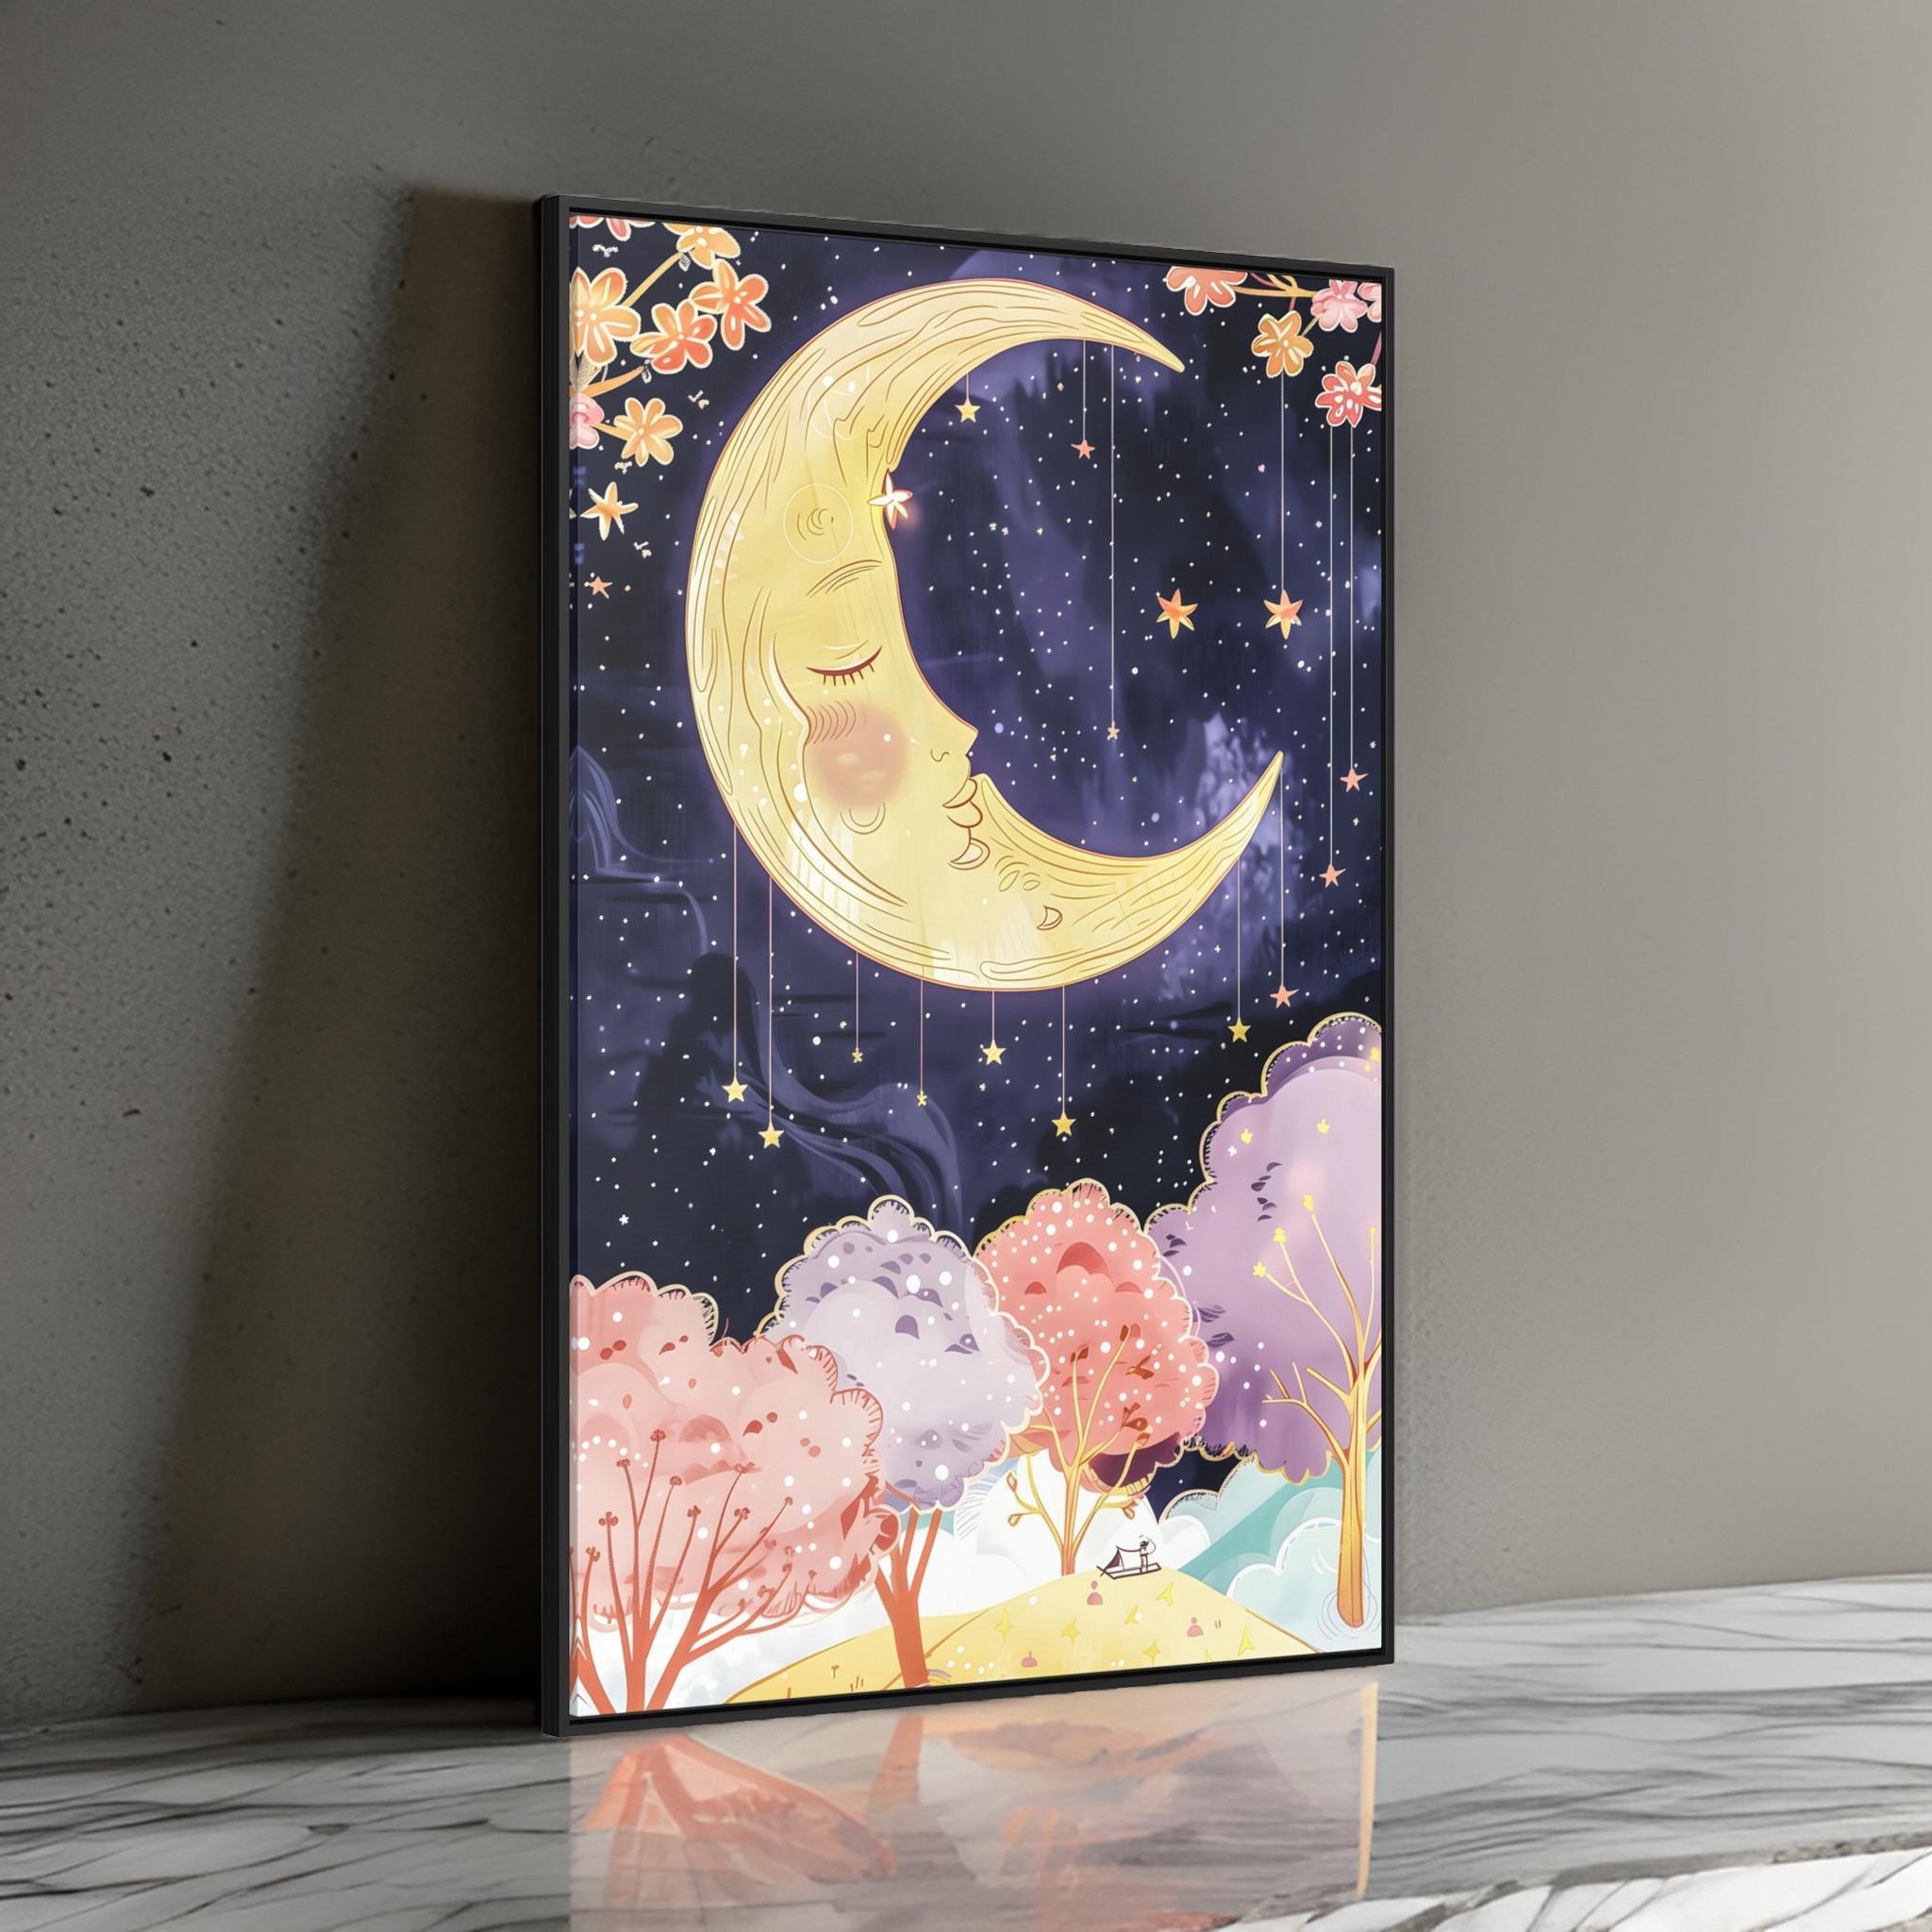 Lullaby Moon Wall Art: Whimsical Fairytale Decor